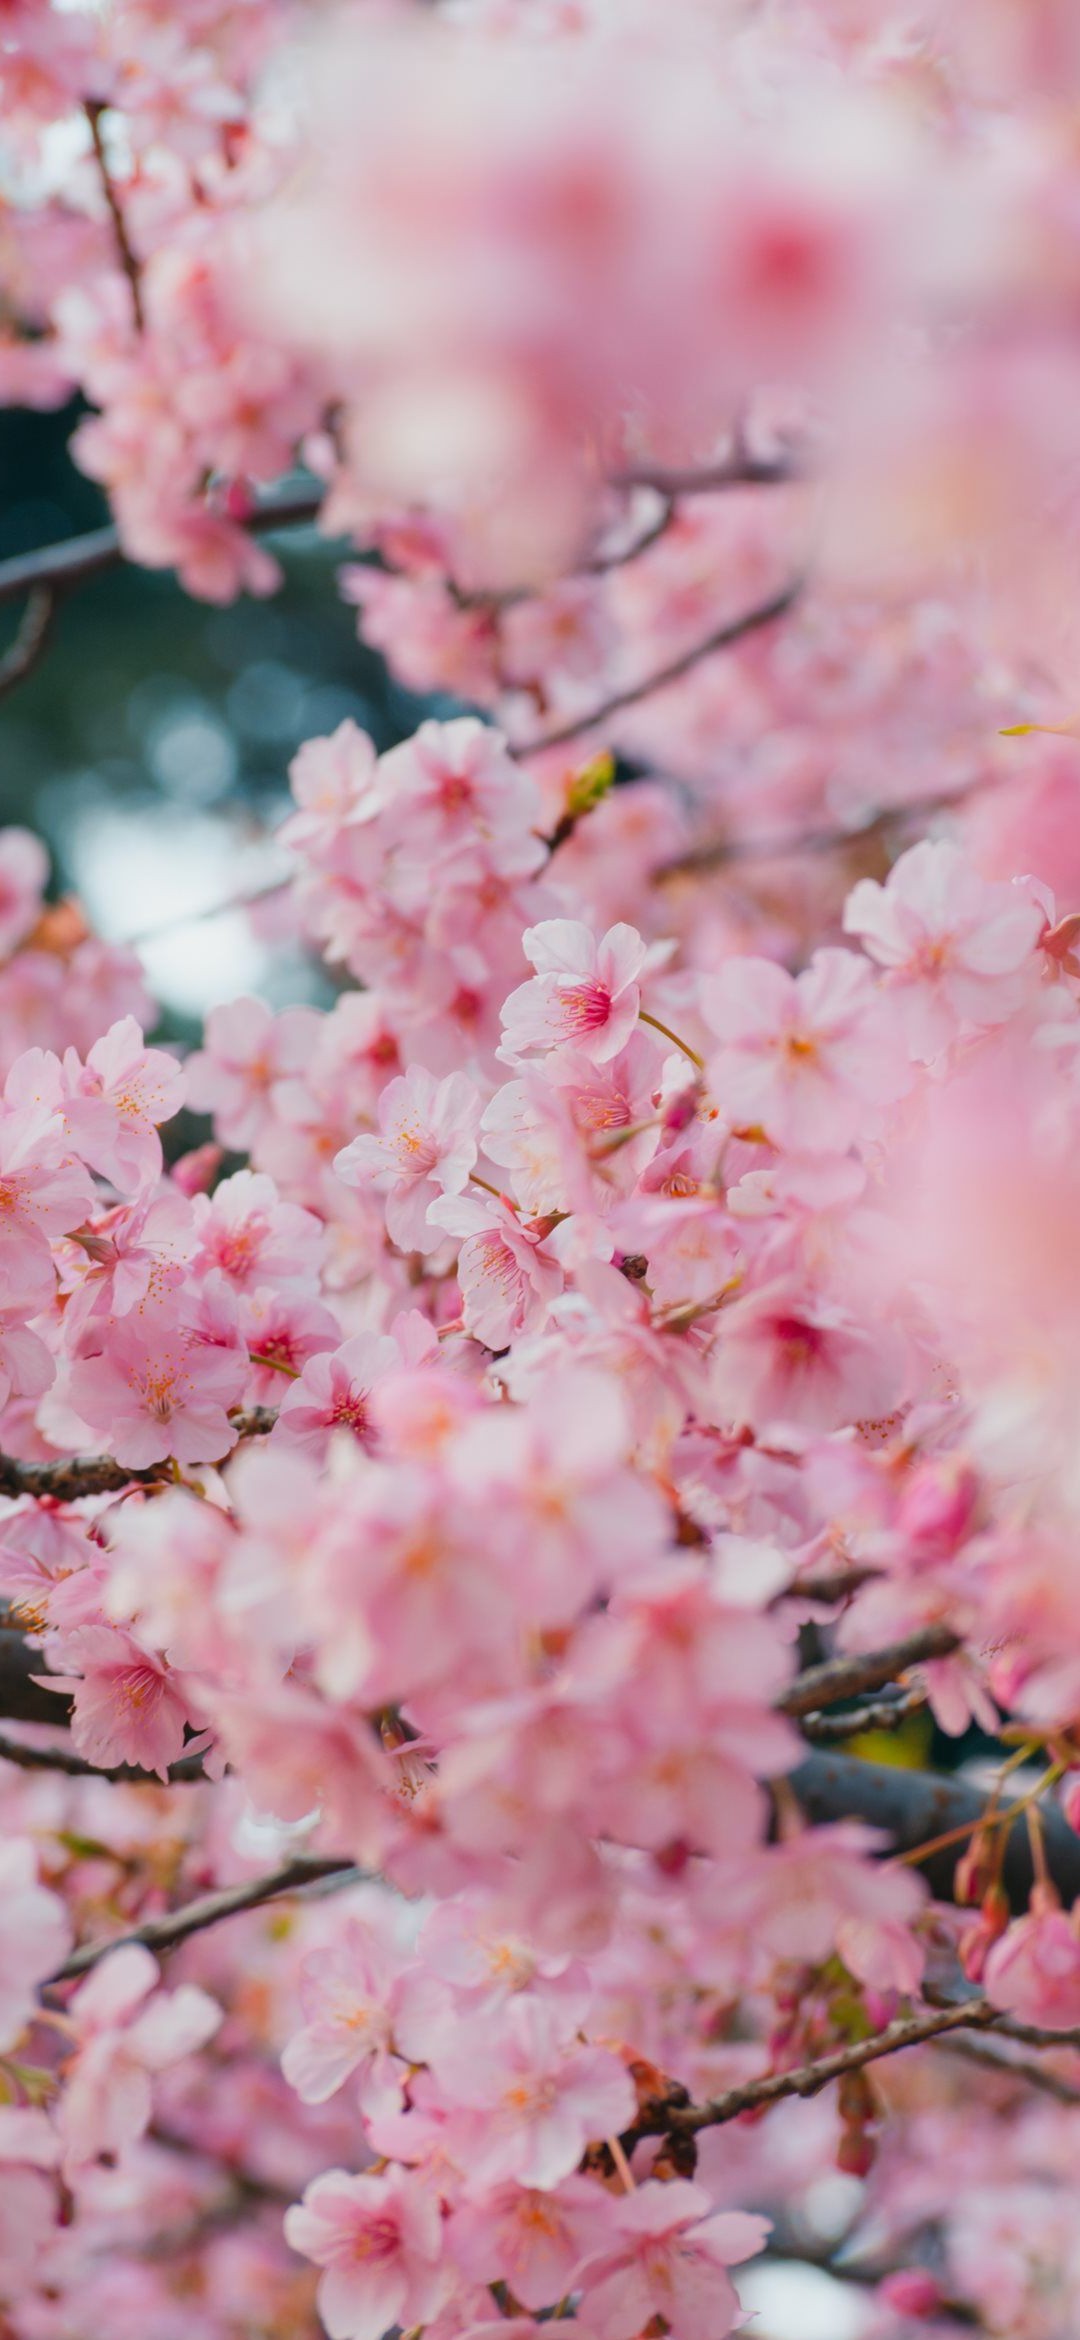 画面いっぱいの桜の花 Redmagic 5 Android スマホ壁紙 待ち受け スマラン